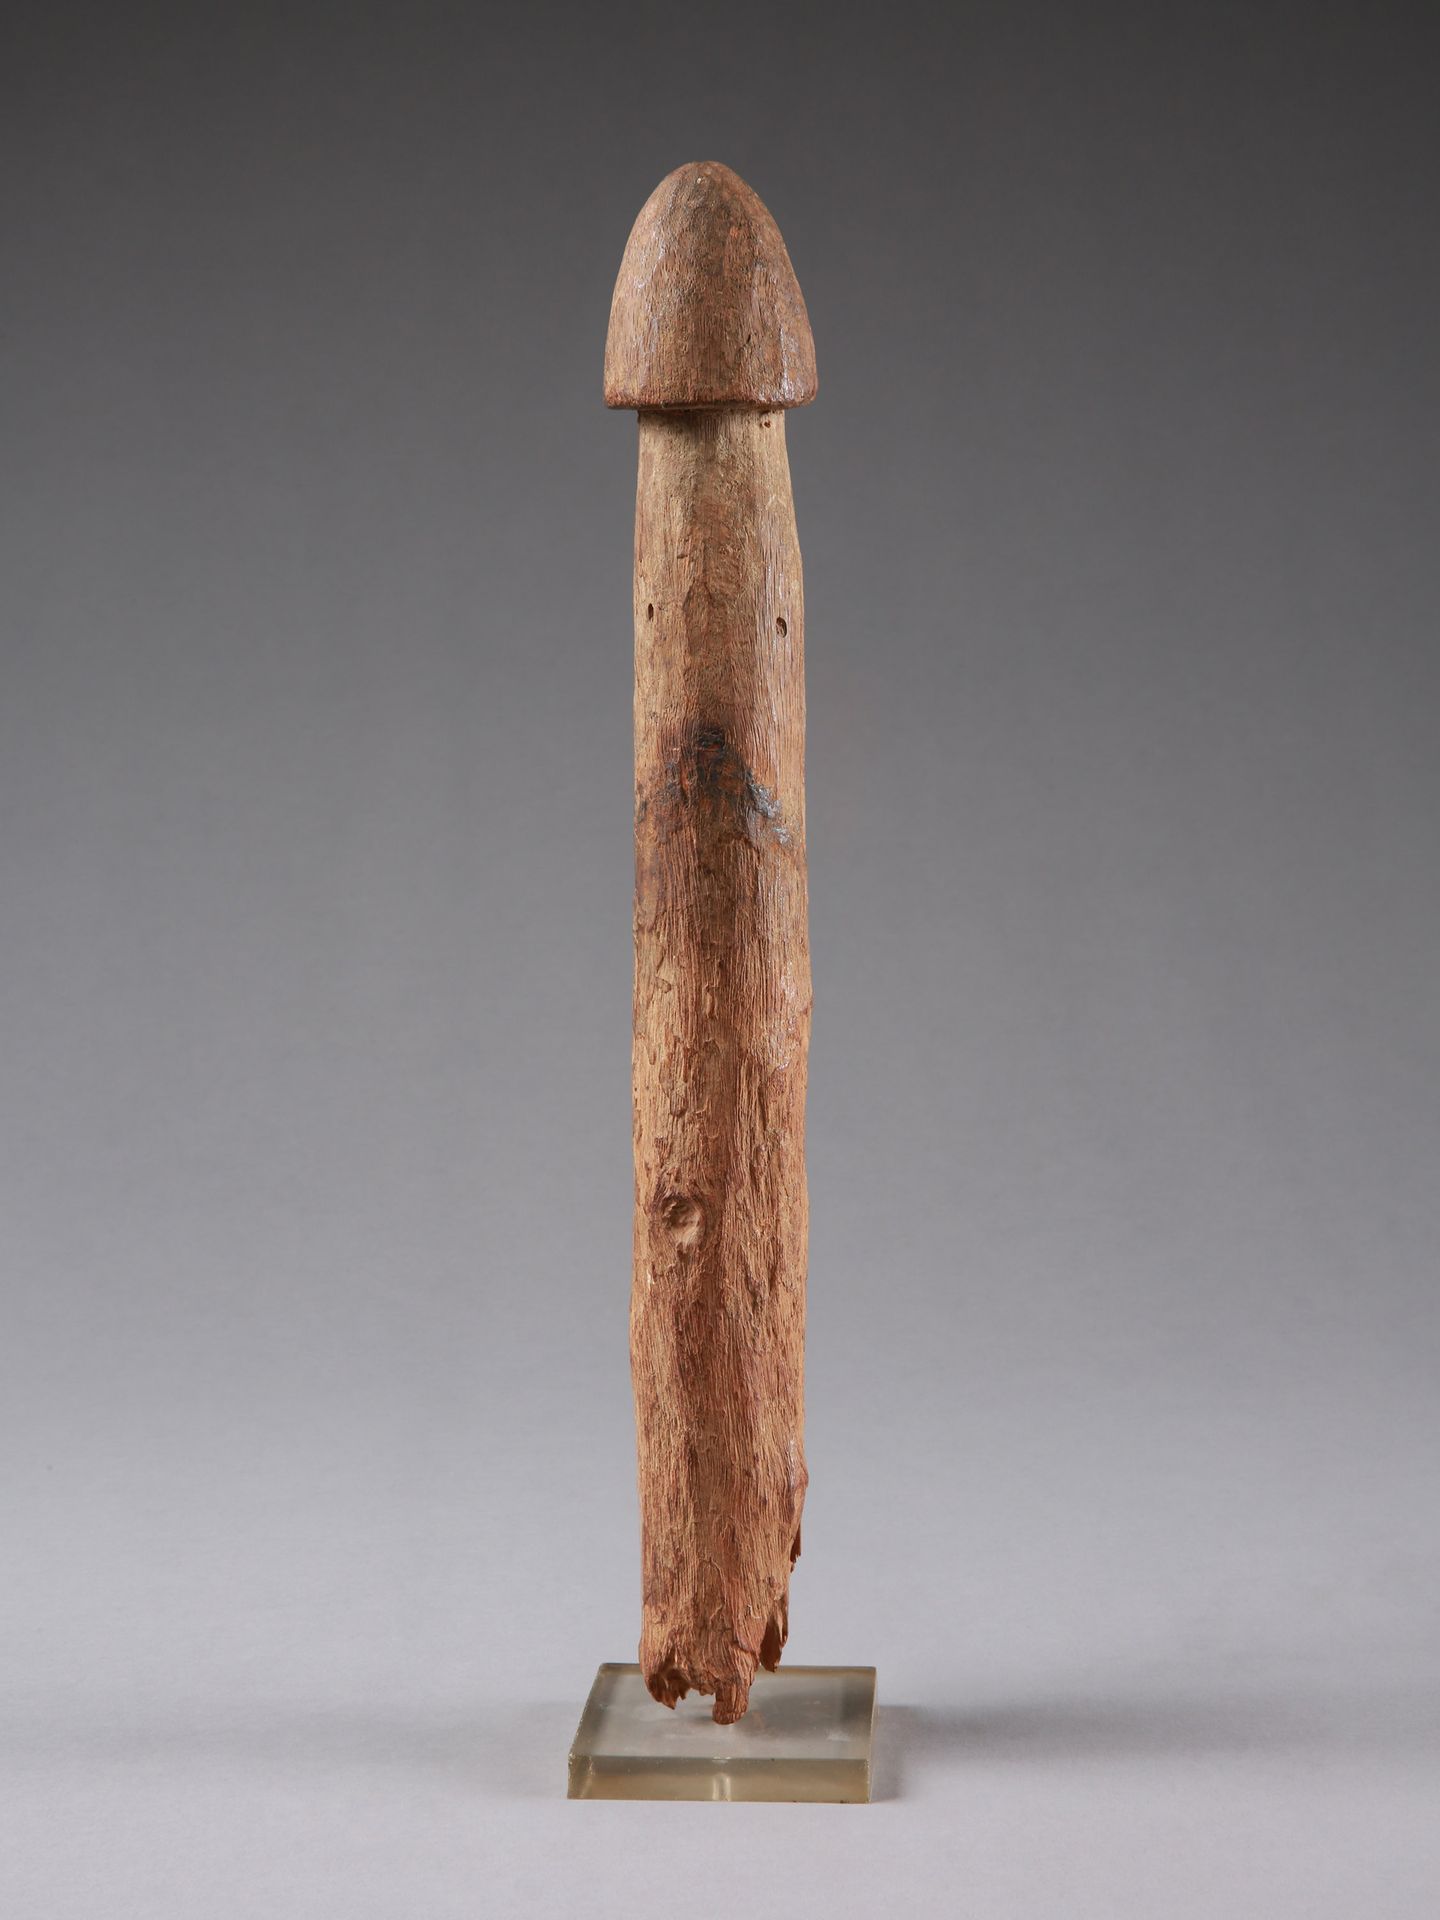 A Fon Phallus Holz-Phallus

Fon, Benin

Mit Sockel / with base

Holz. H 35 cm.

&hellip;